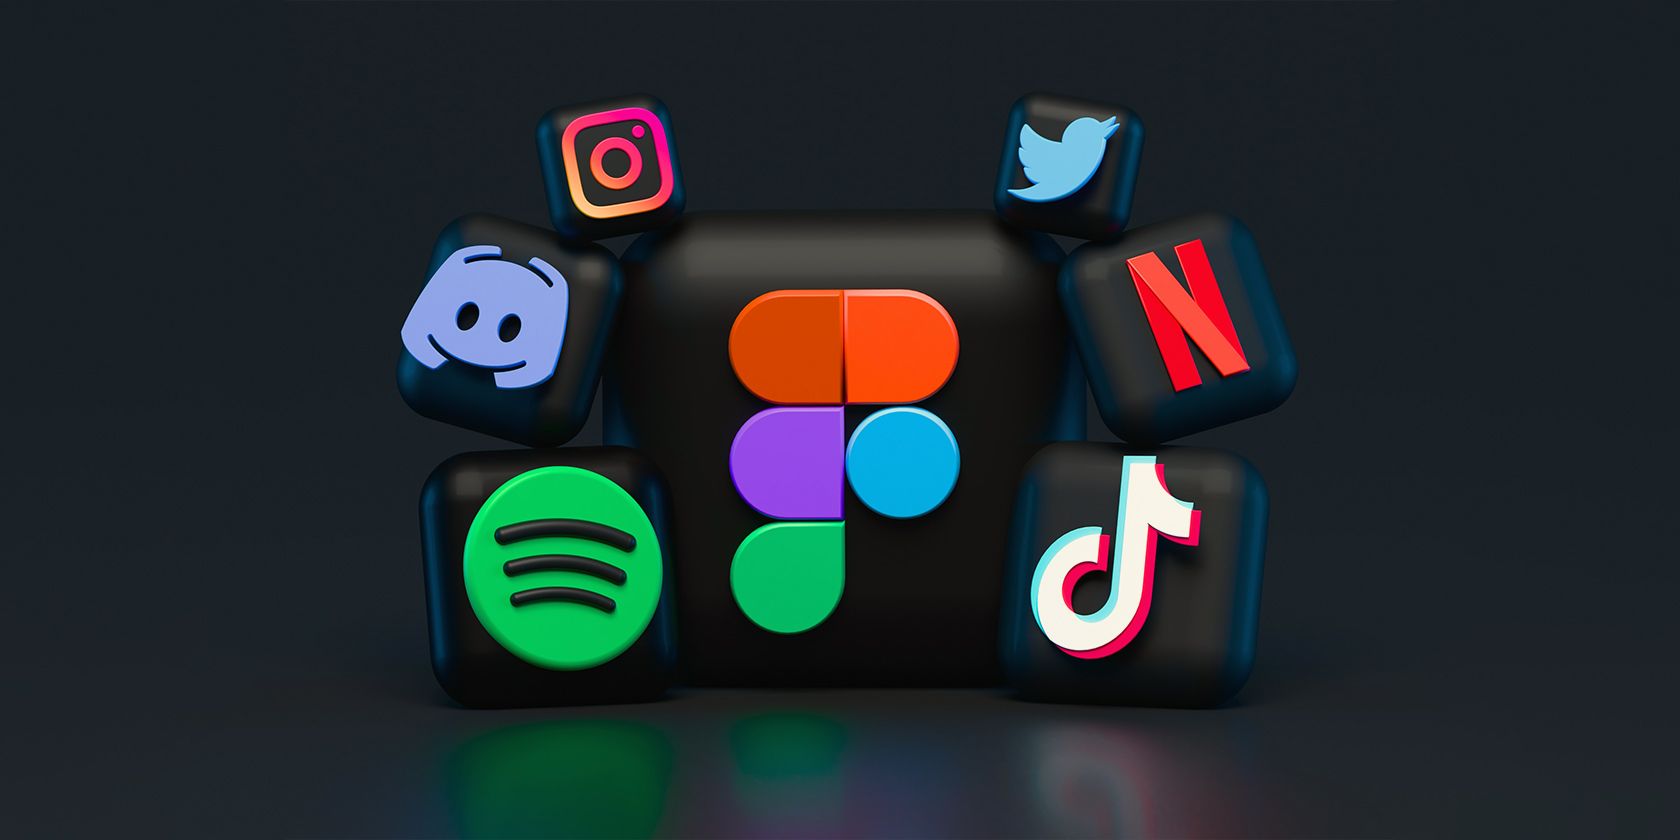 logos of different social media platforms